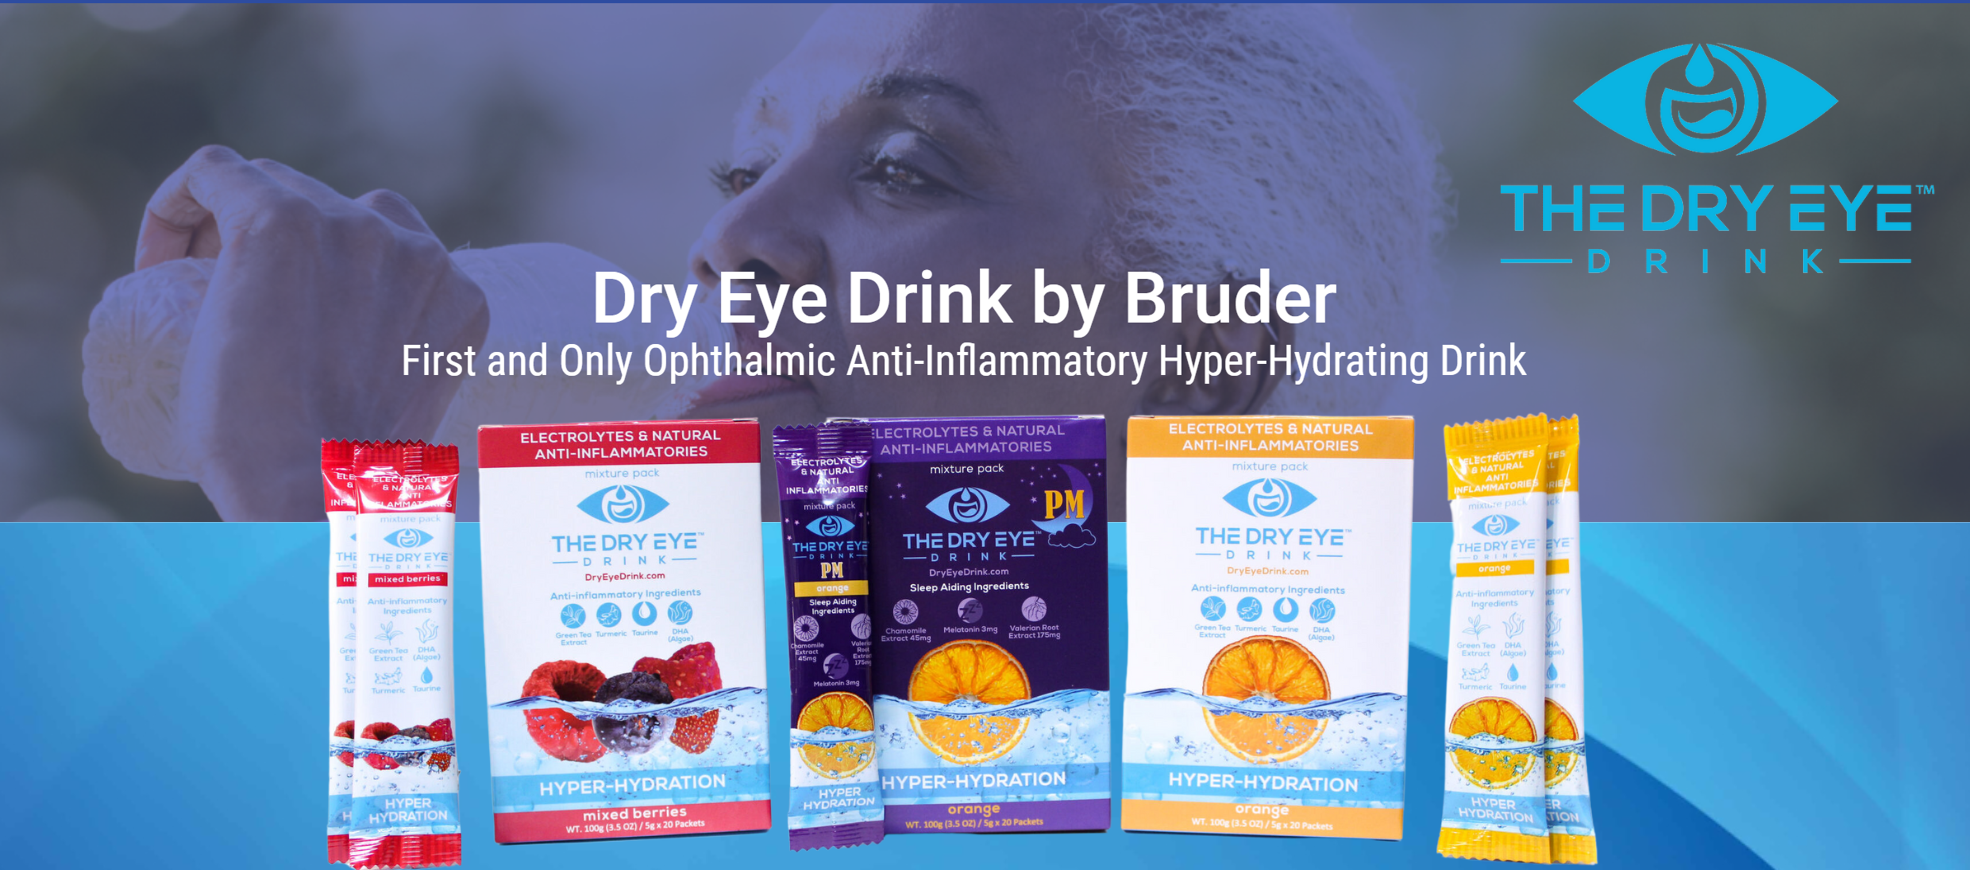 Dry Eye Drink by Bruder